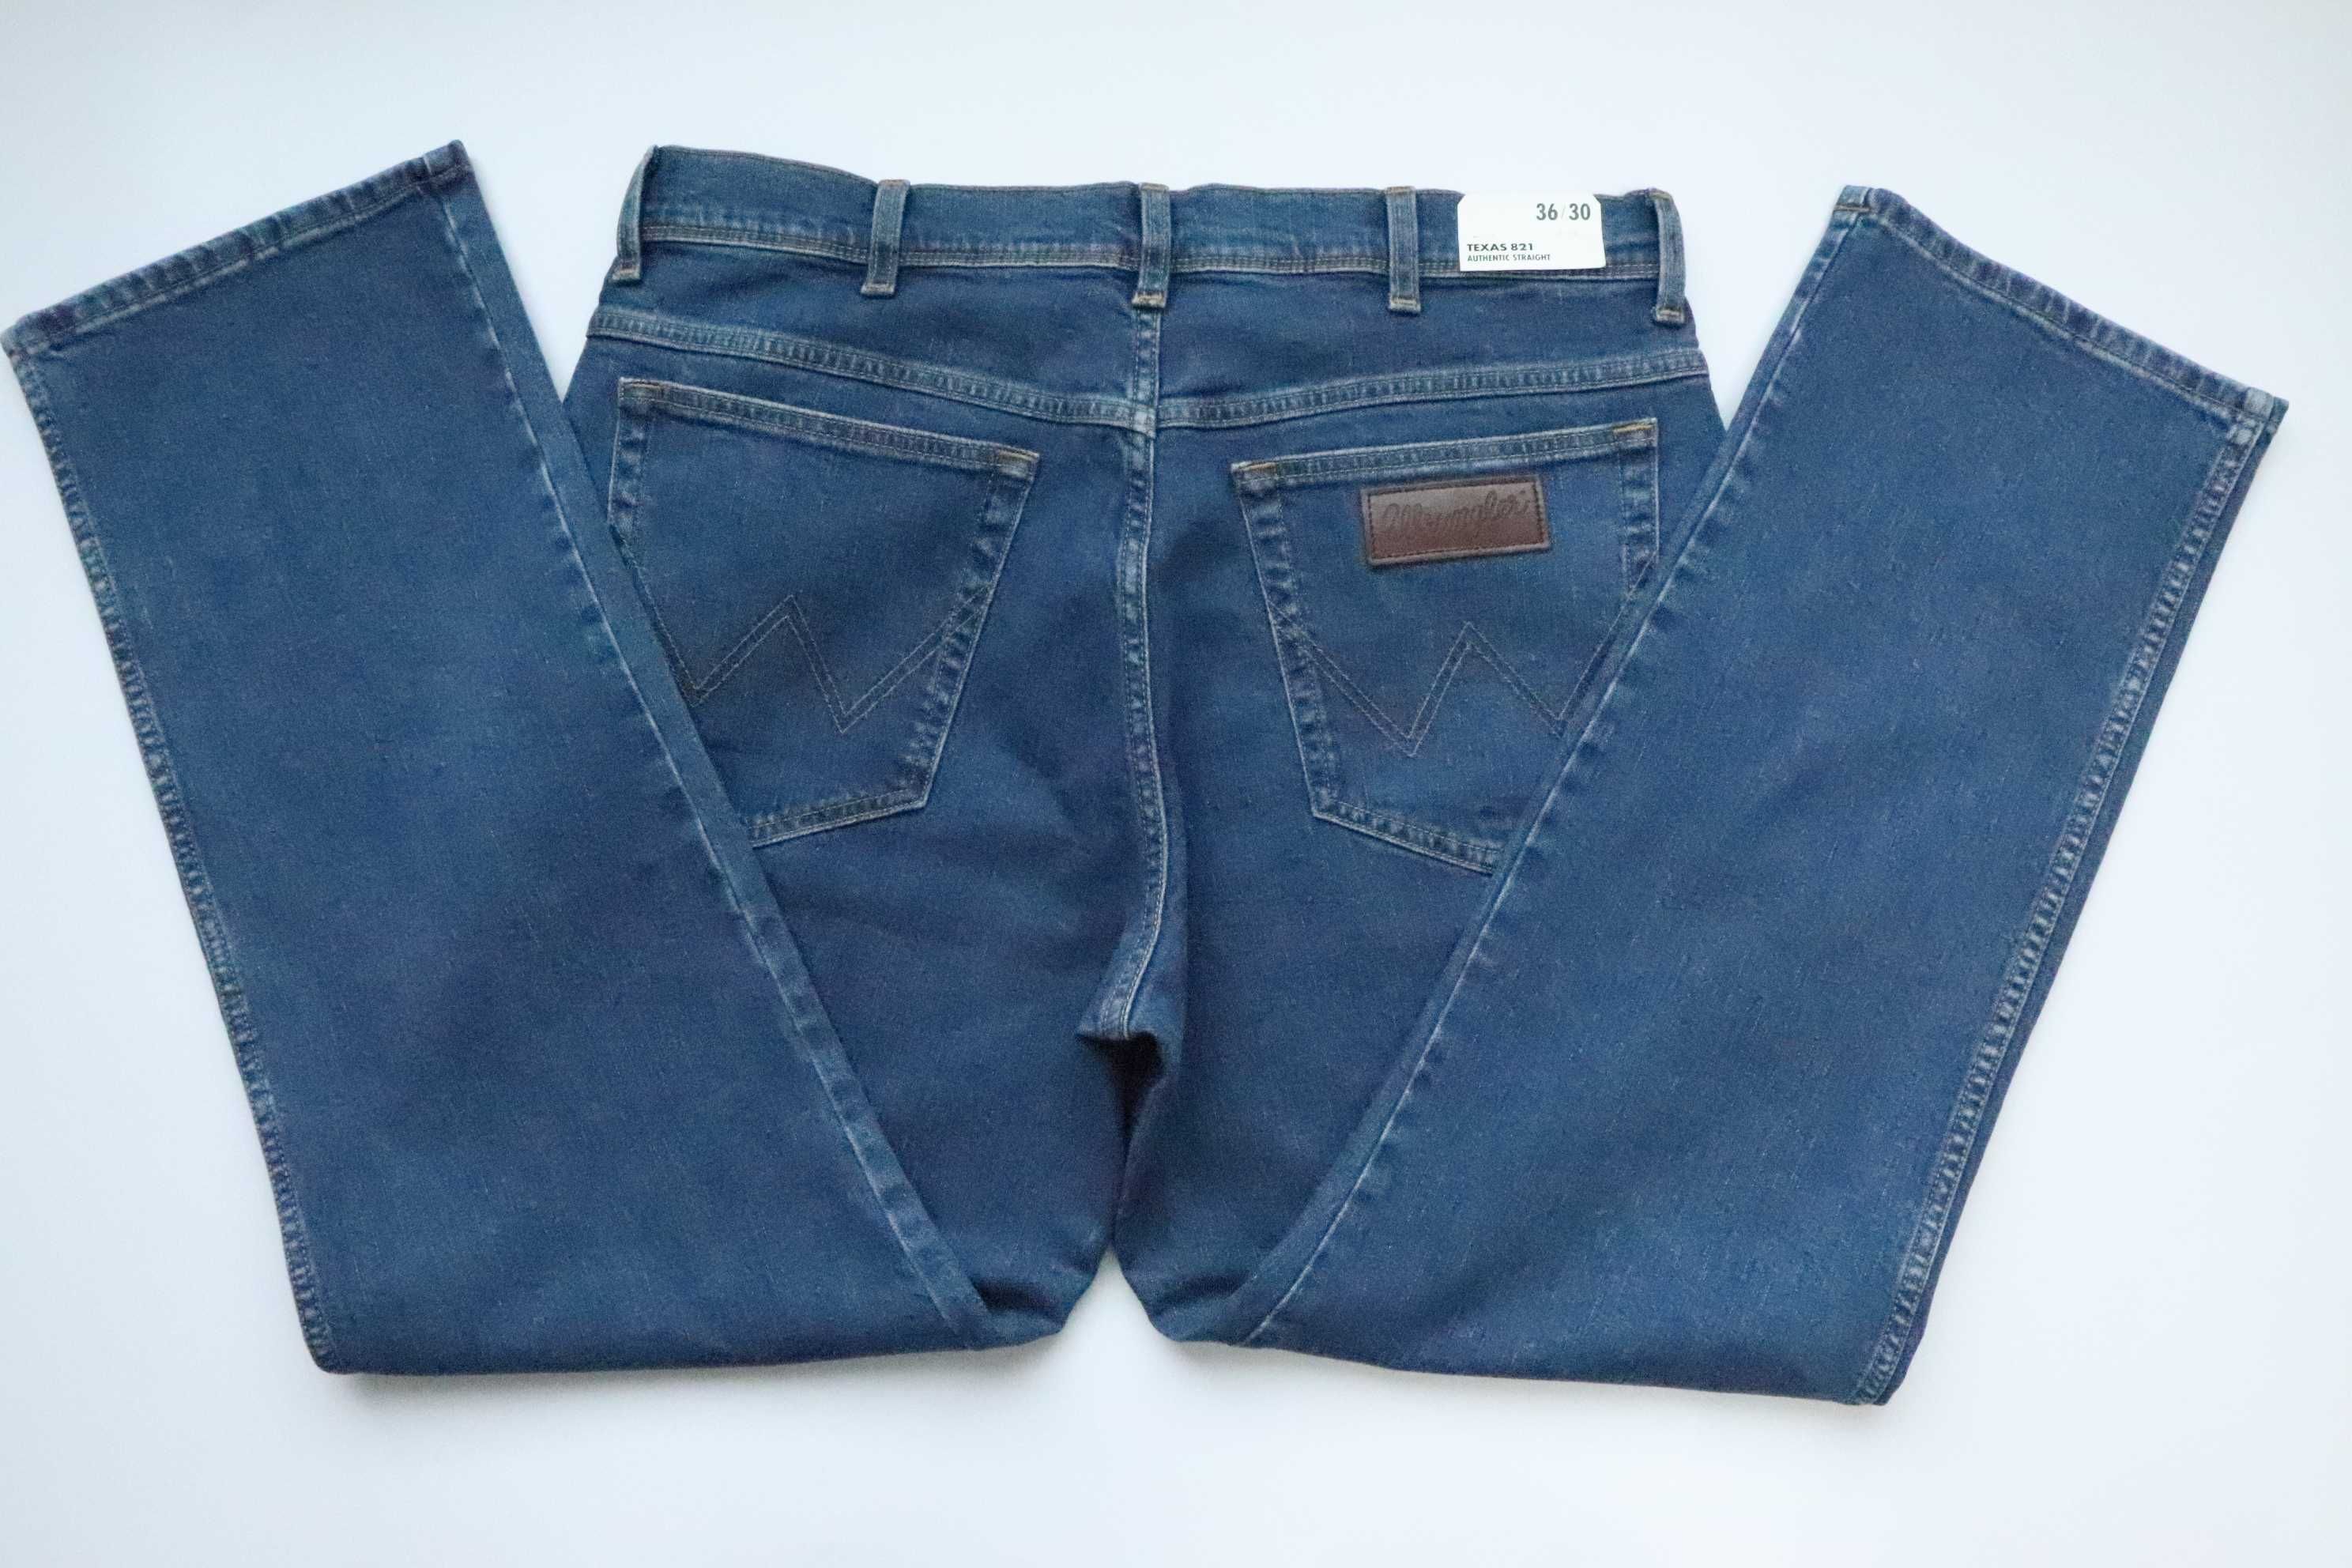 WRANGLER TEXAS 821 W36 L30 męskie spodnie jeansy nowe straight